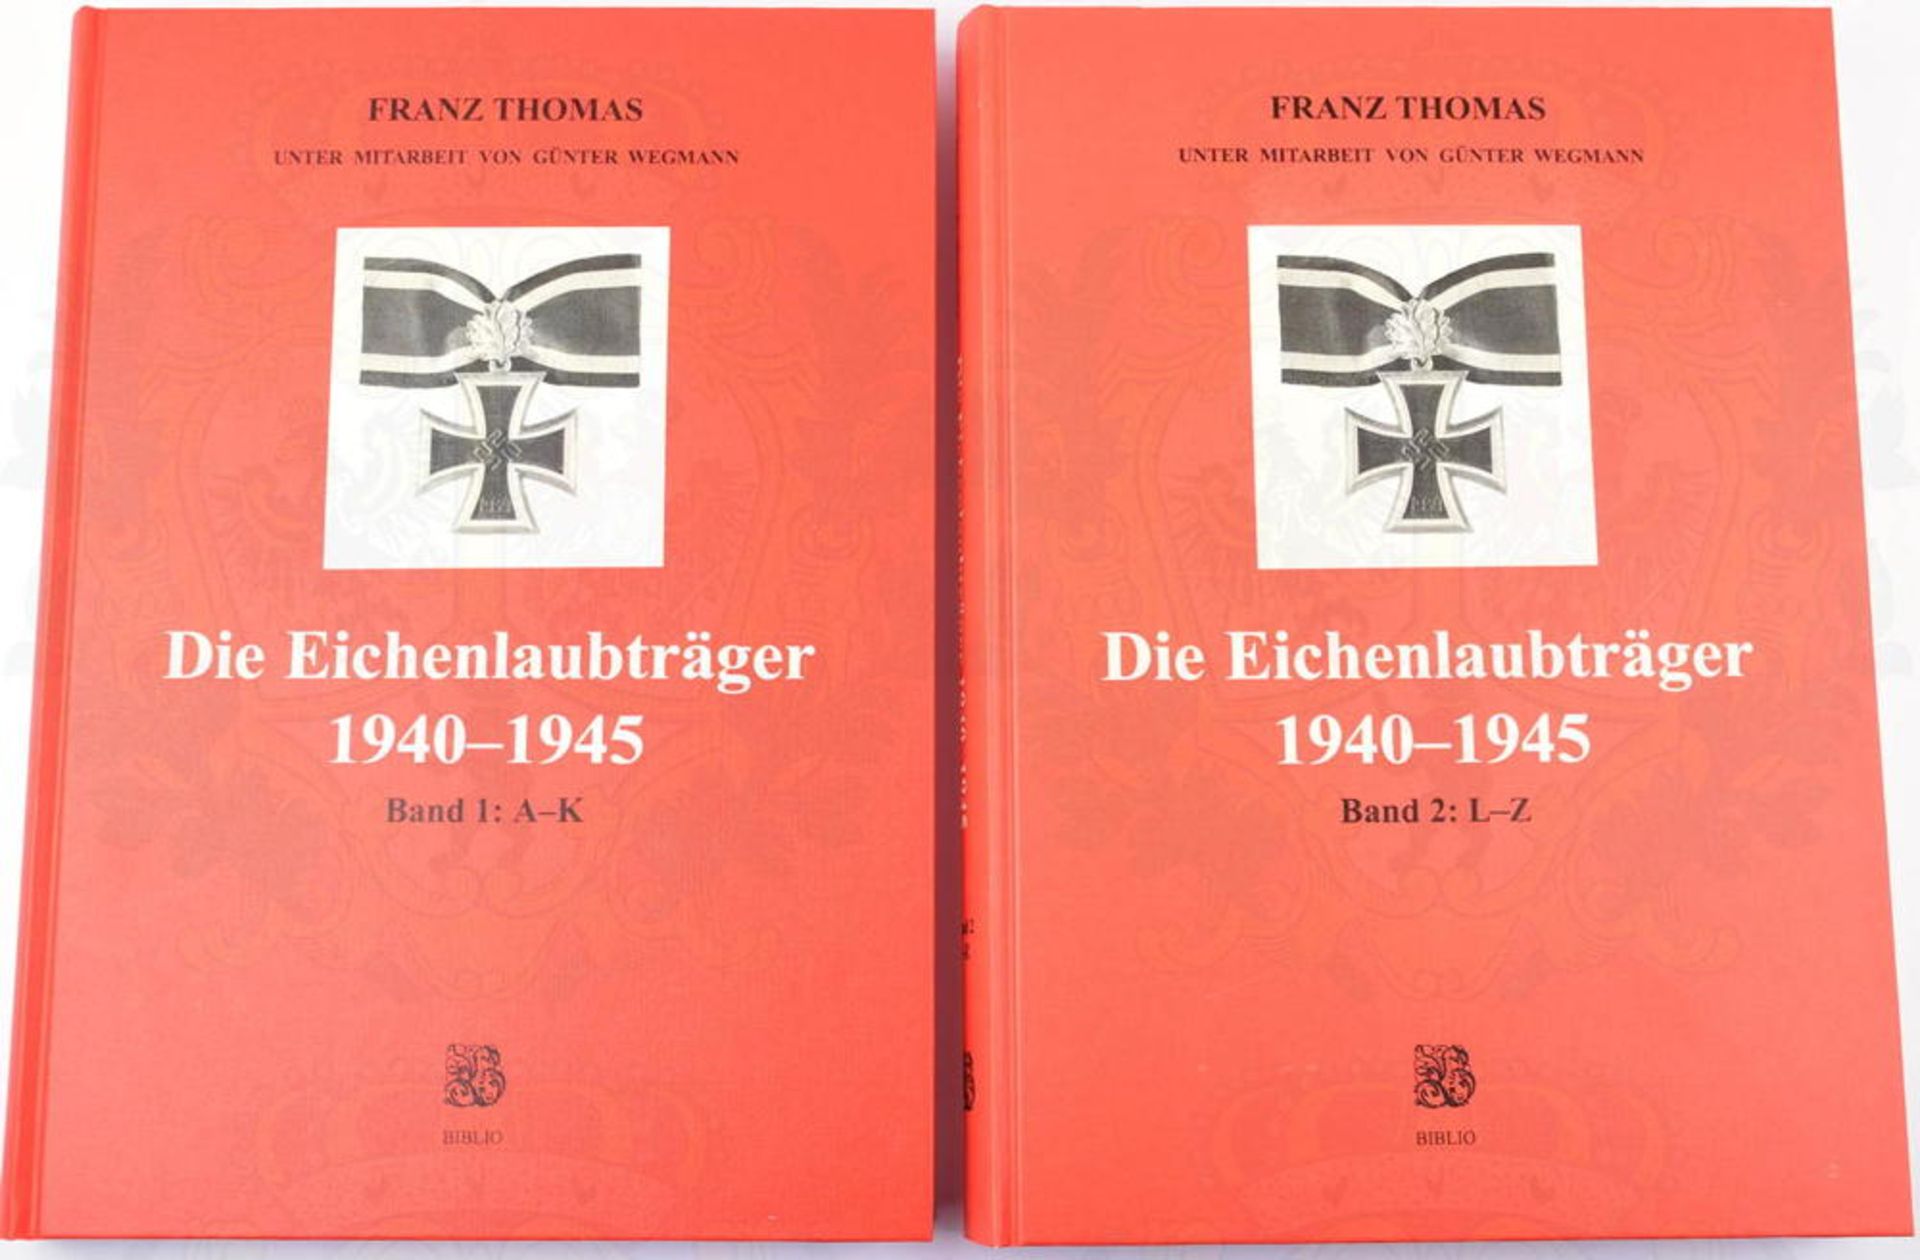 DIE EICHENLAUBTRÄGER 1940-1945, 1. u. 2. Band, kpl., F. Thomas, Osnabrück 1997, zus. 940 S., Kurzbio